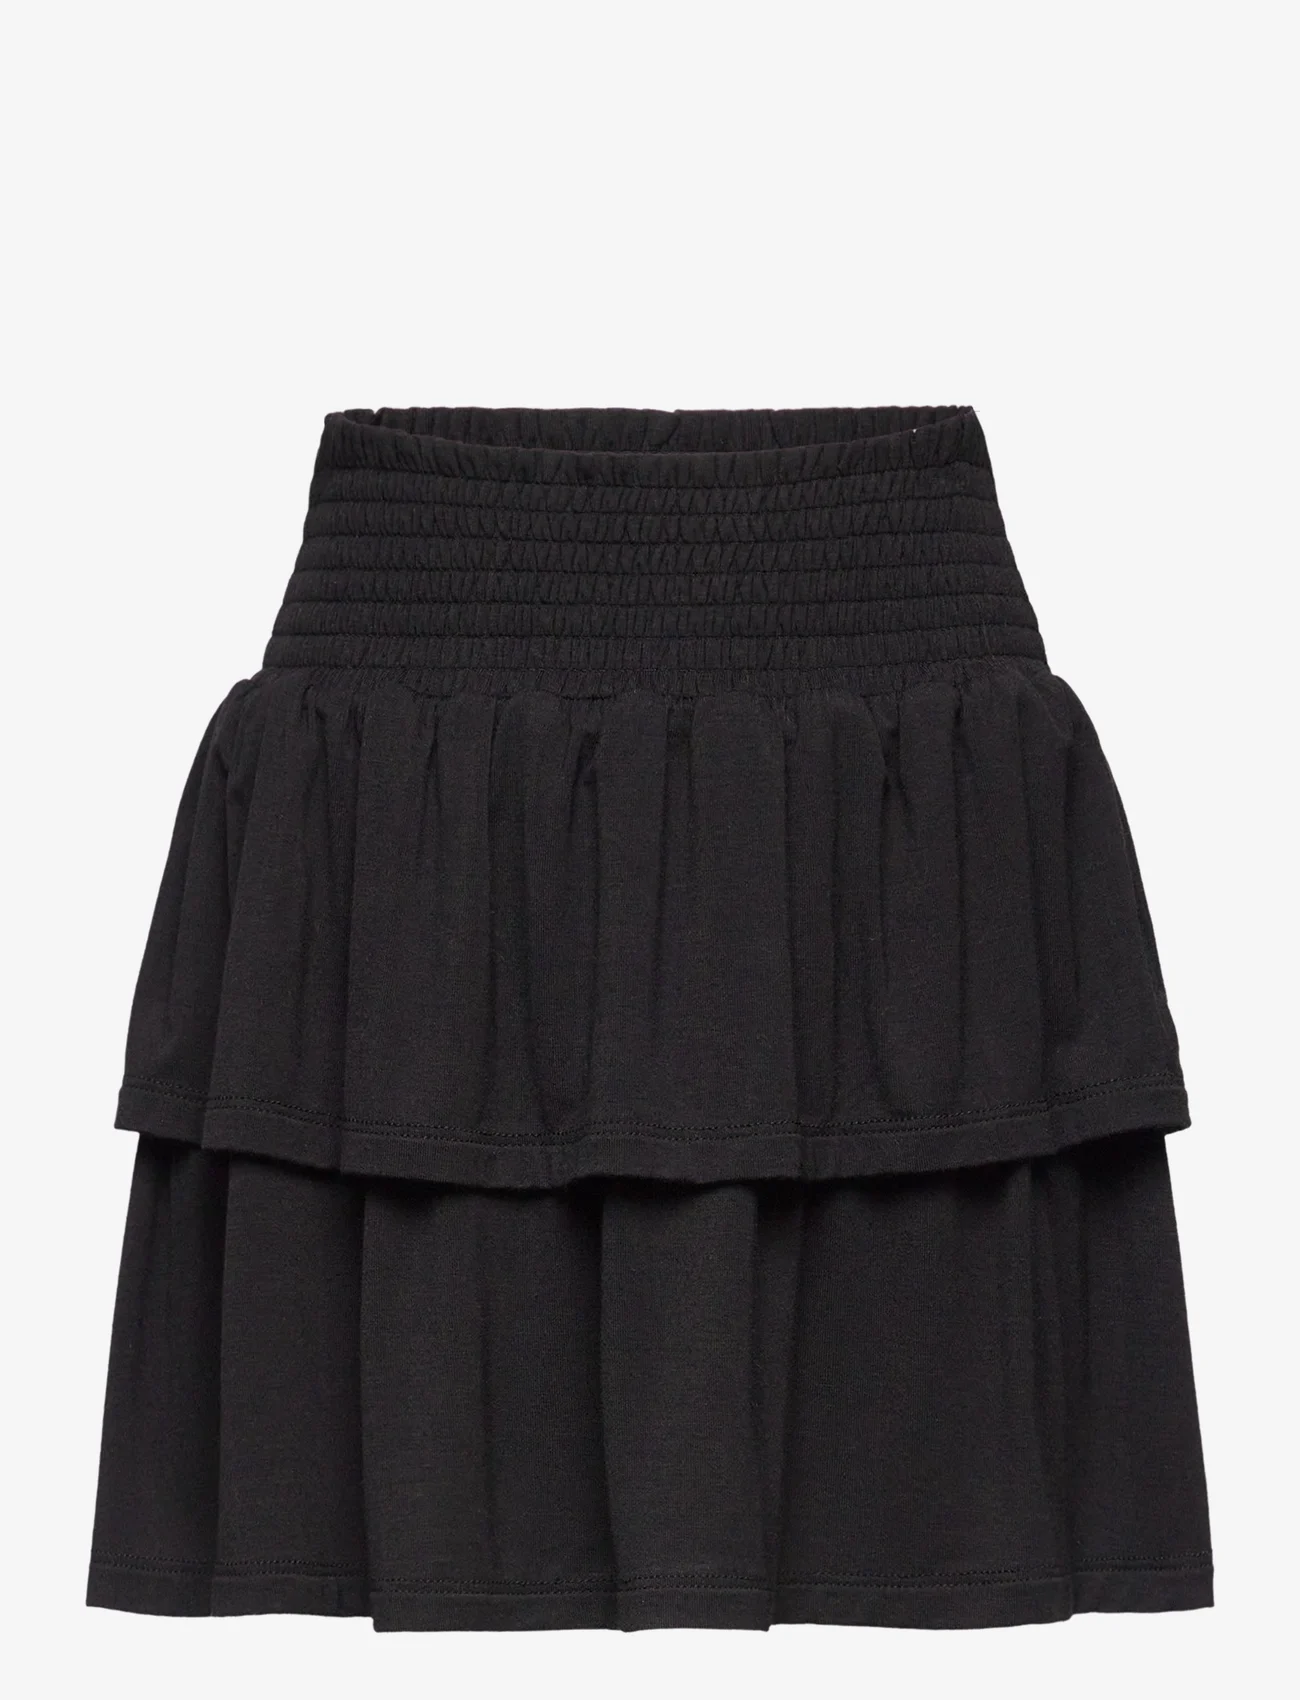 Rosemunde Kids - Skirt - short skirts - black - 0